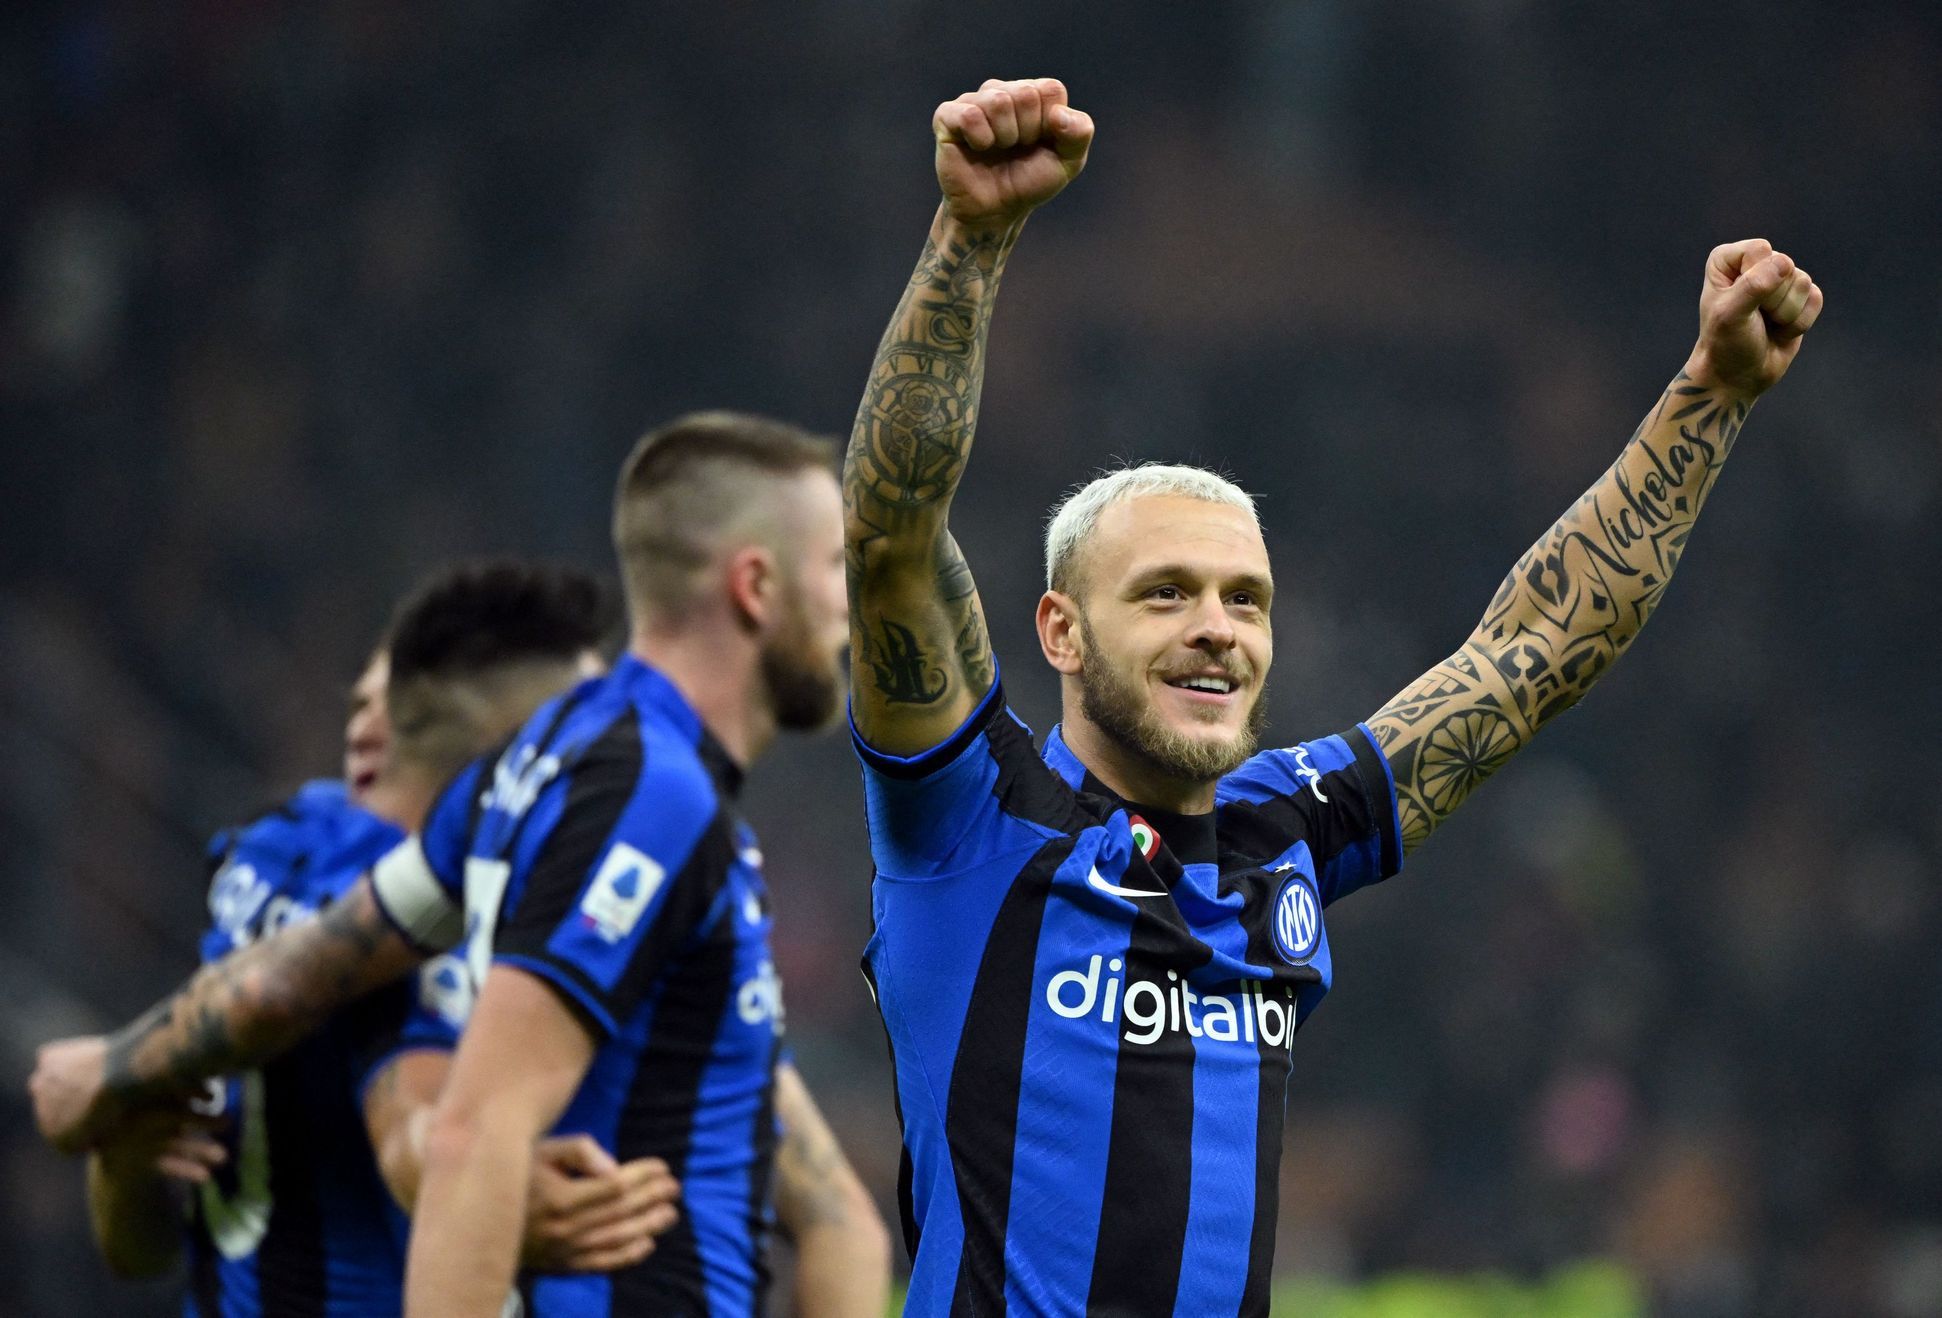 I calciatori del Napoli hanno perso per la prima volta in questa stagione nel campionato italiano, perdendo contro l’Inter 0:1